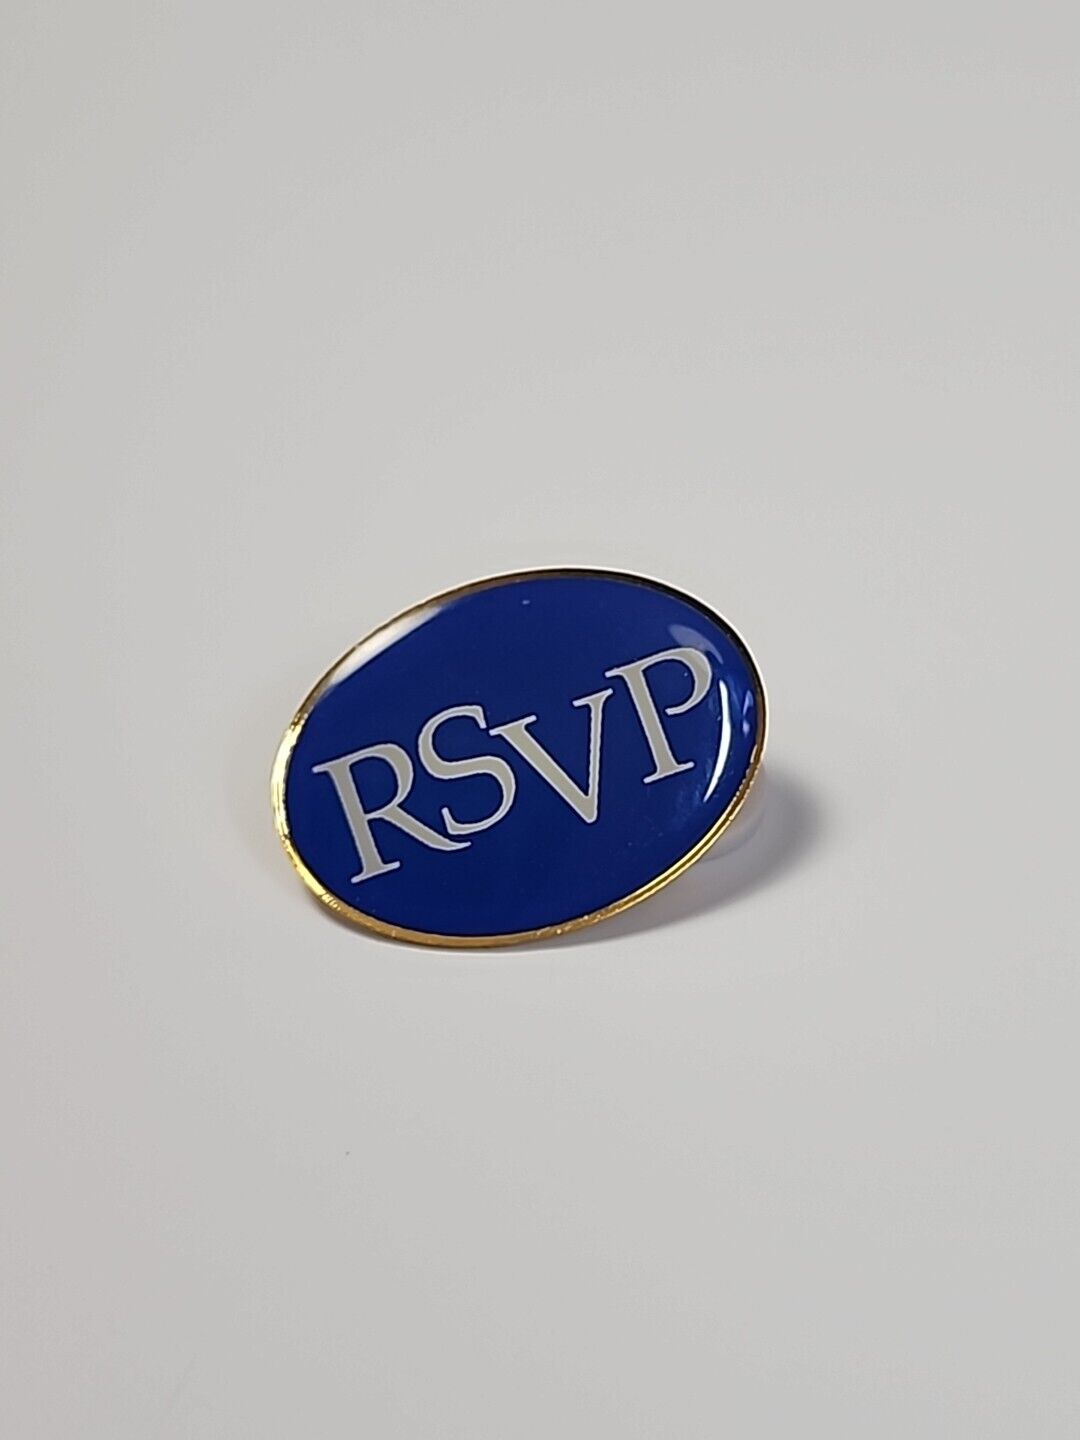 RSVP Lapel Pin Blue & White Colors